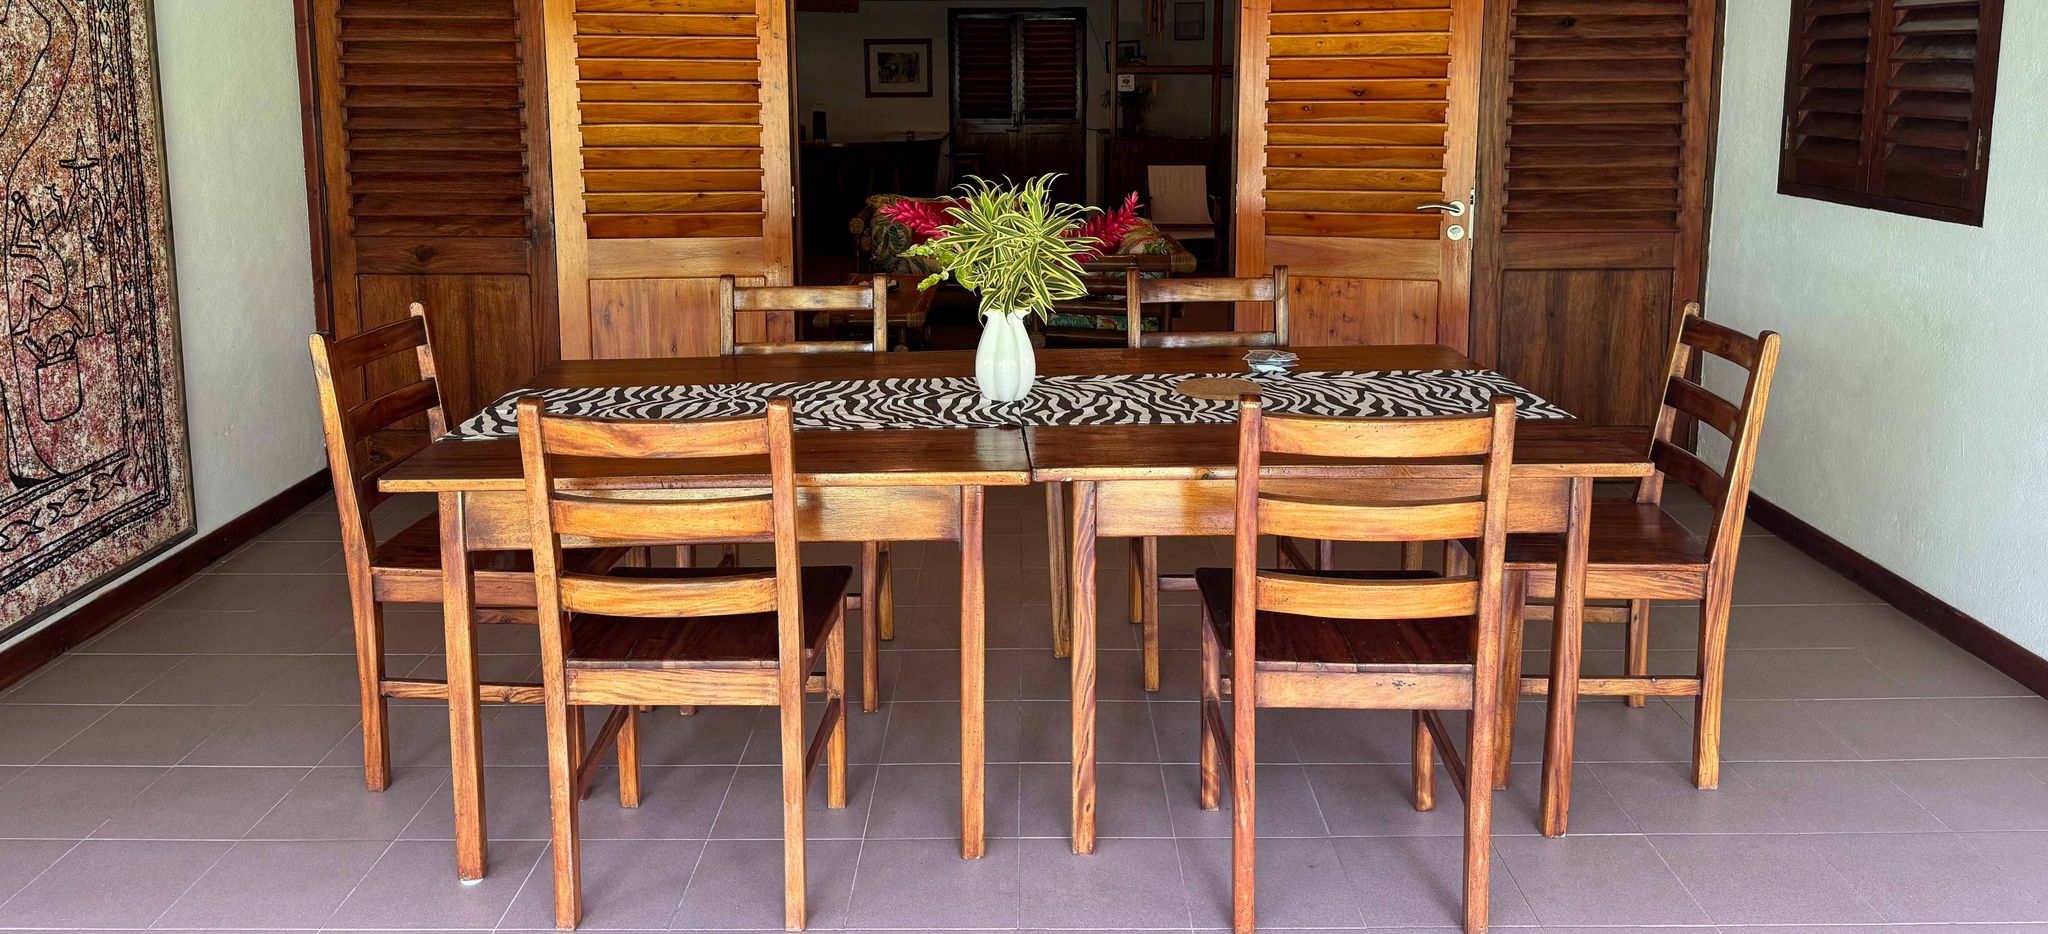 Trauminsel Reisen - Villa Bambou Esstisch auf der Veranda